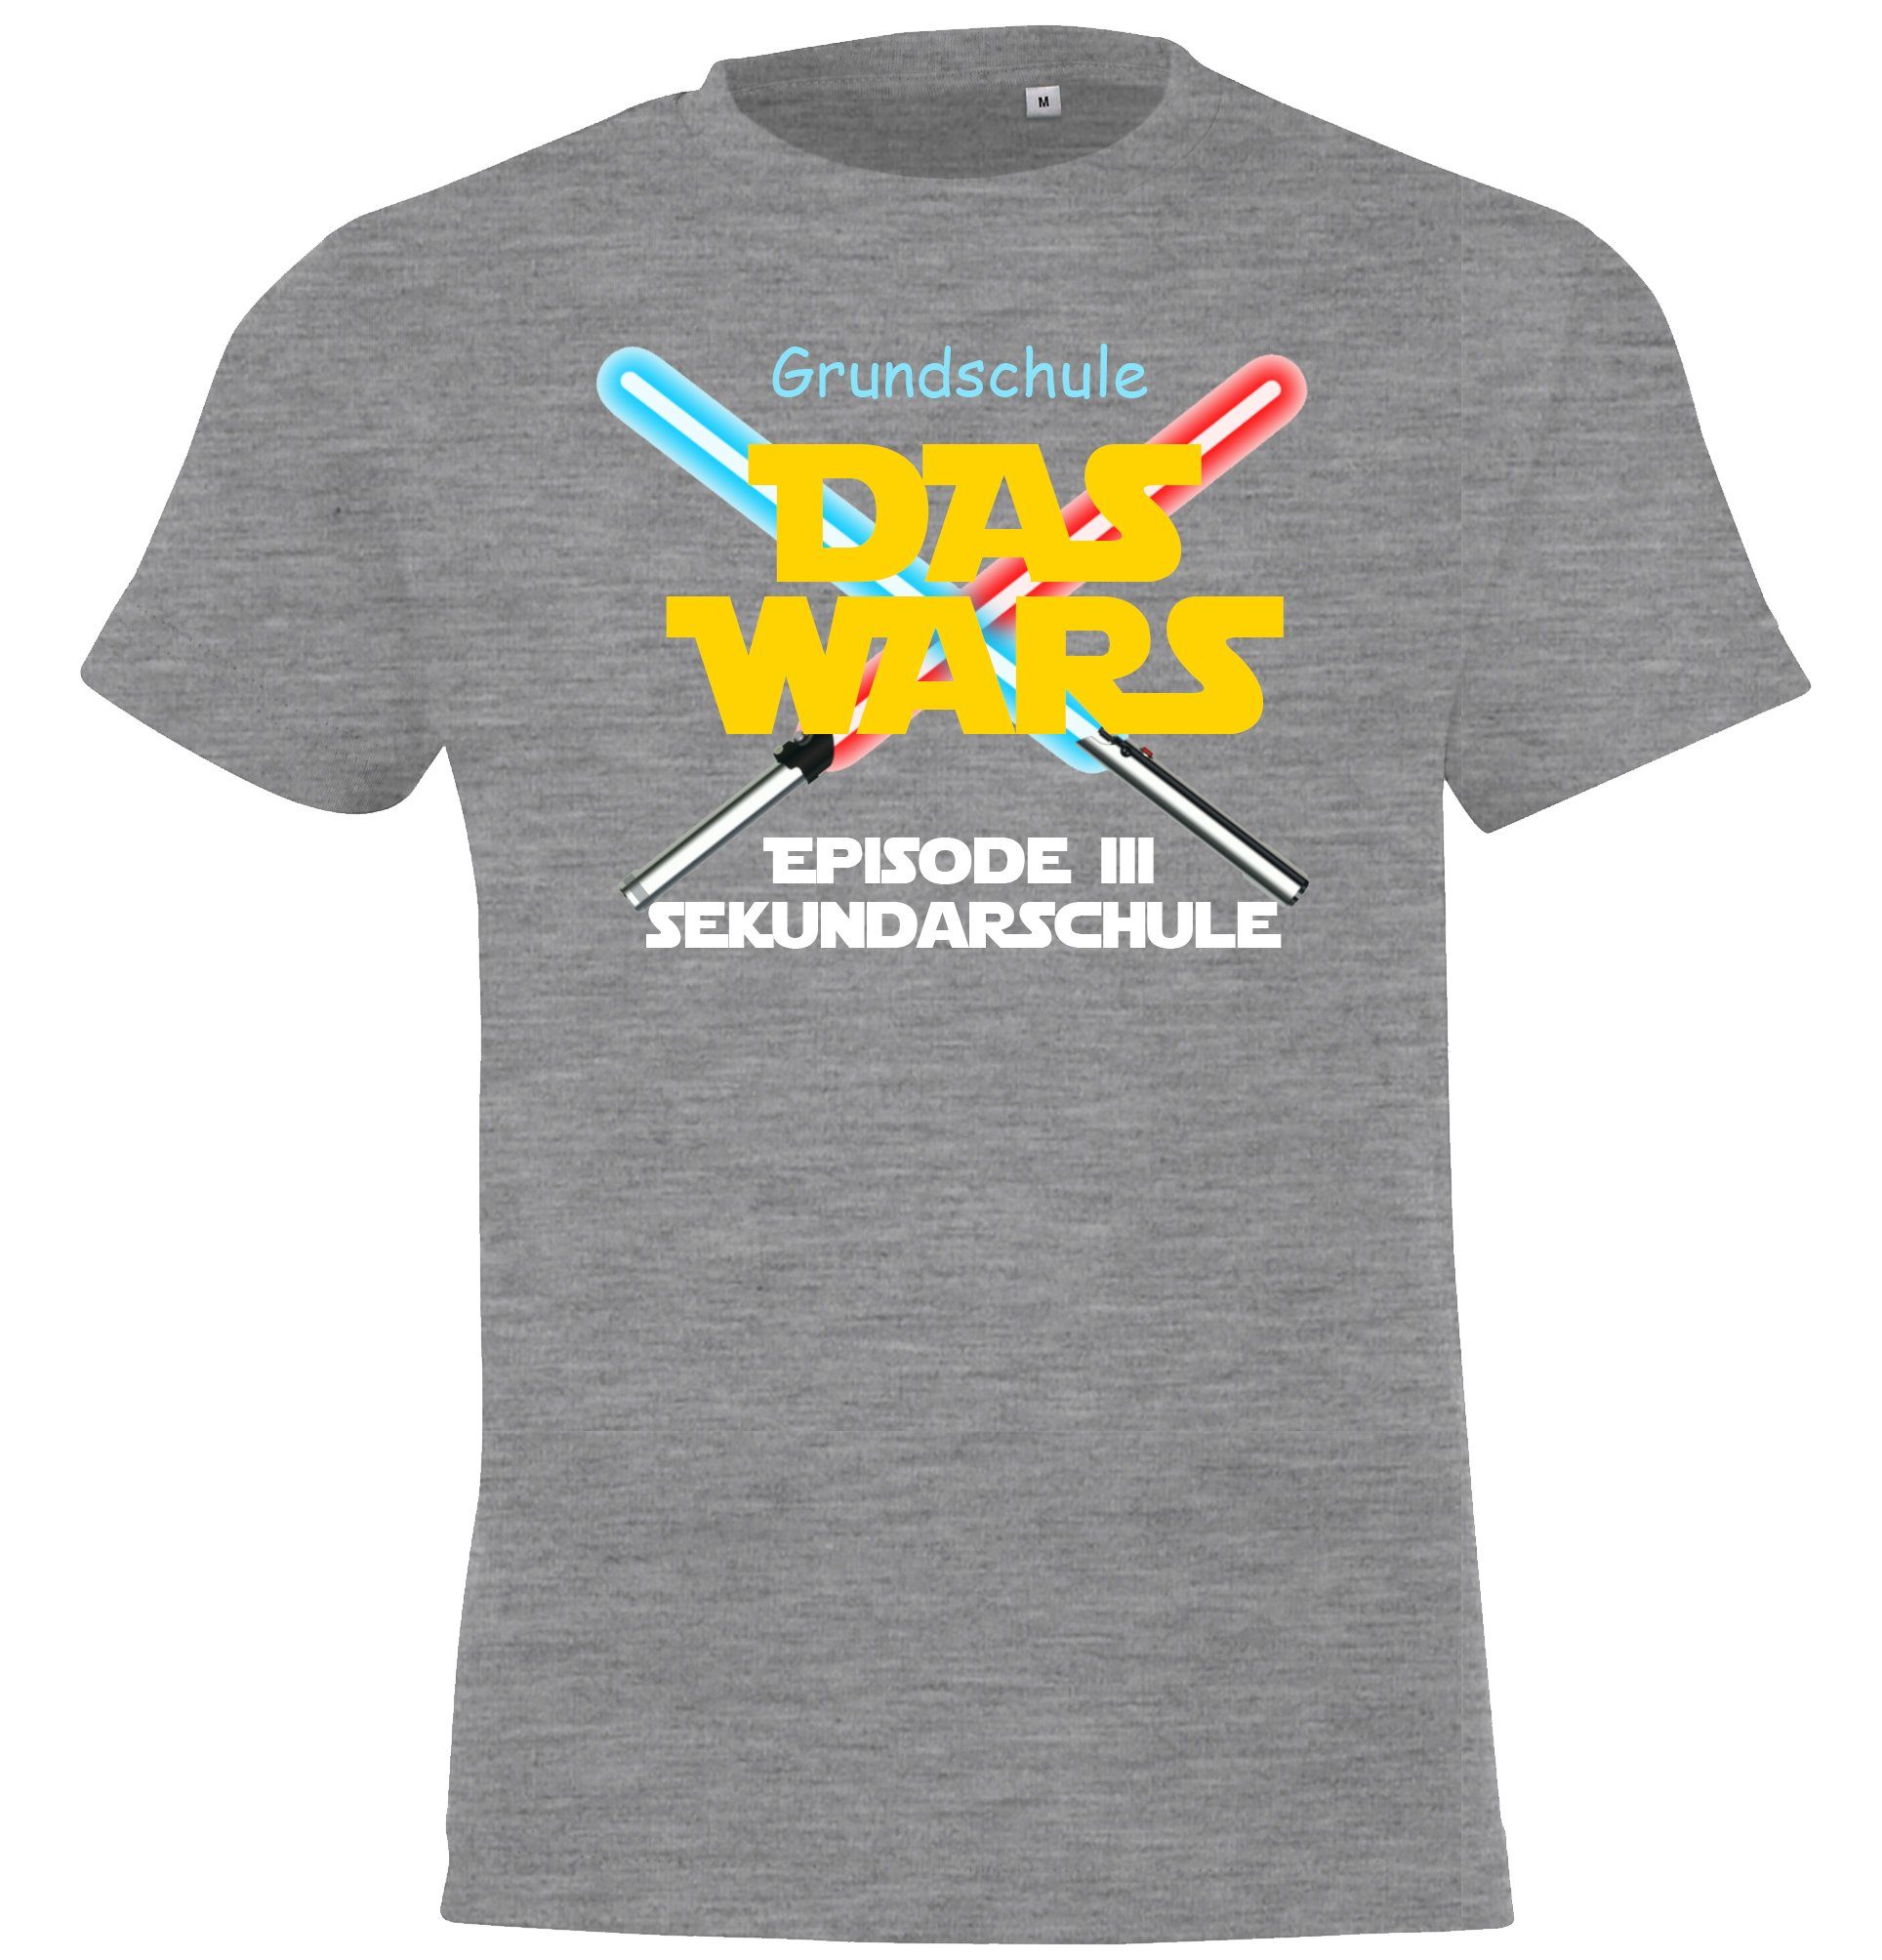 Youth Designz T-Shirt Grundschule Das Wars Kinder Shirt mit lustigem Motiv der Schulzeit Grau